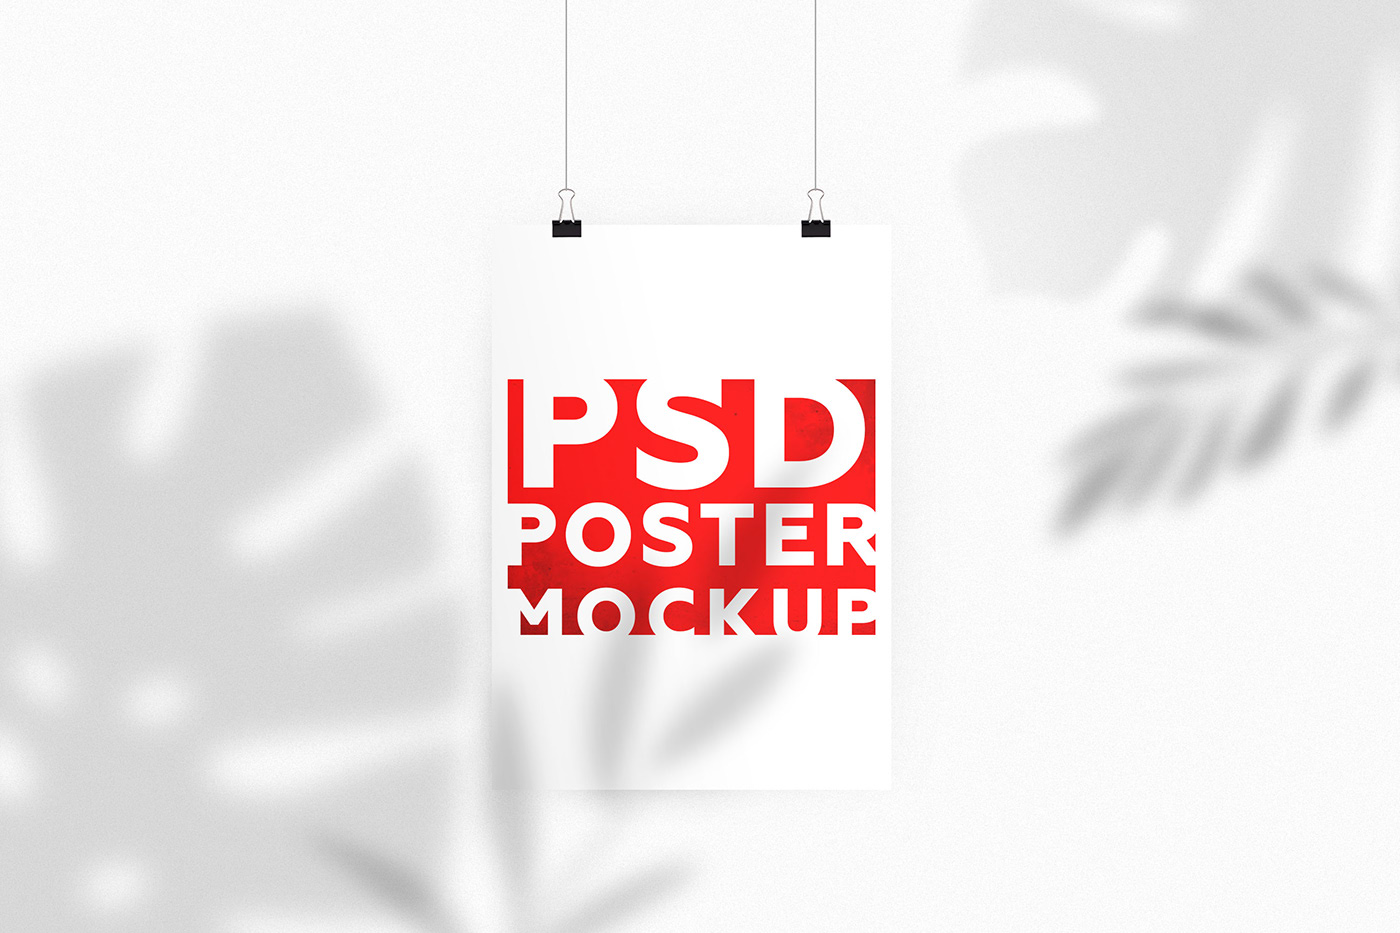 Download Free Psd Shadow Poster Mockup Free Mockup Download PSD Mockup Templates